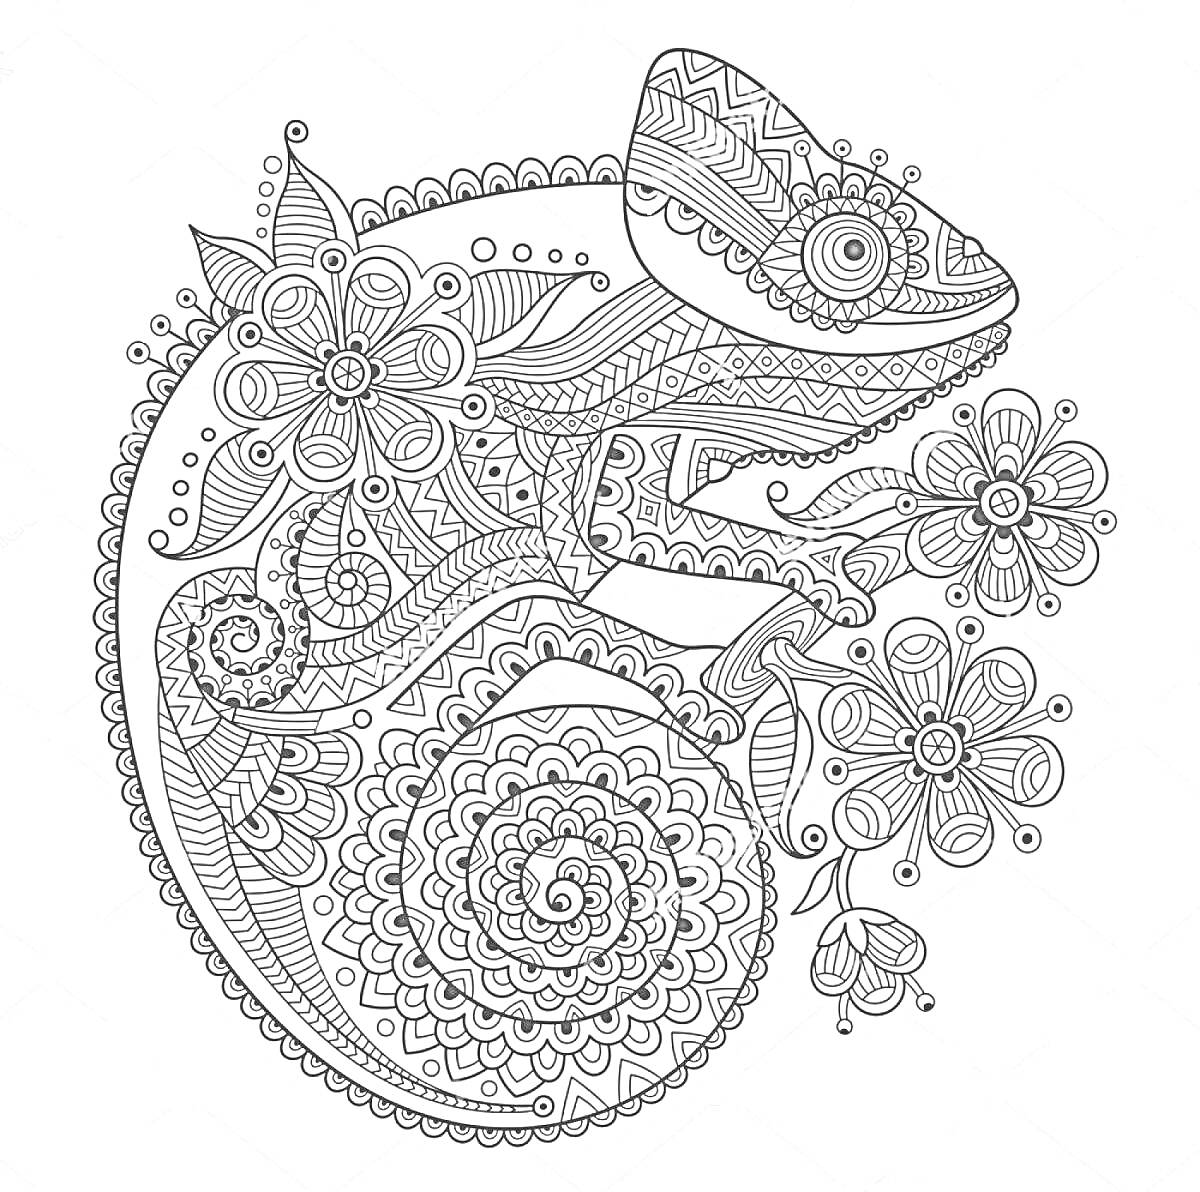 Раскраска Антистресс-раскраска с ящерицей и цветами, геометрические узоры и орнаменты